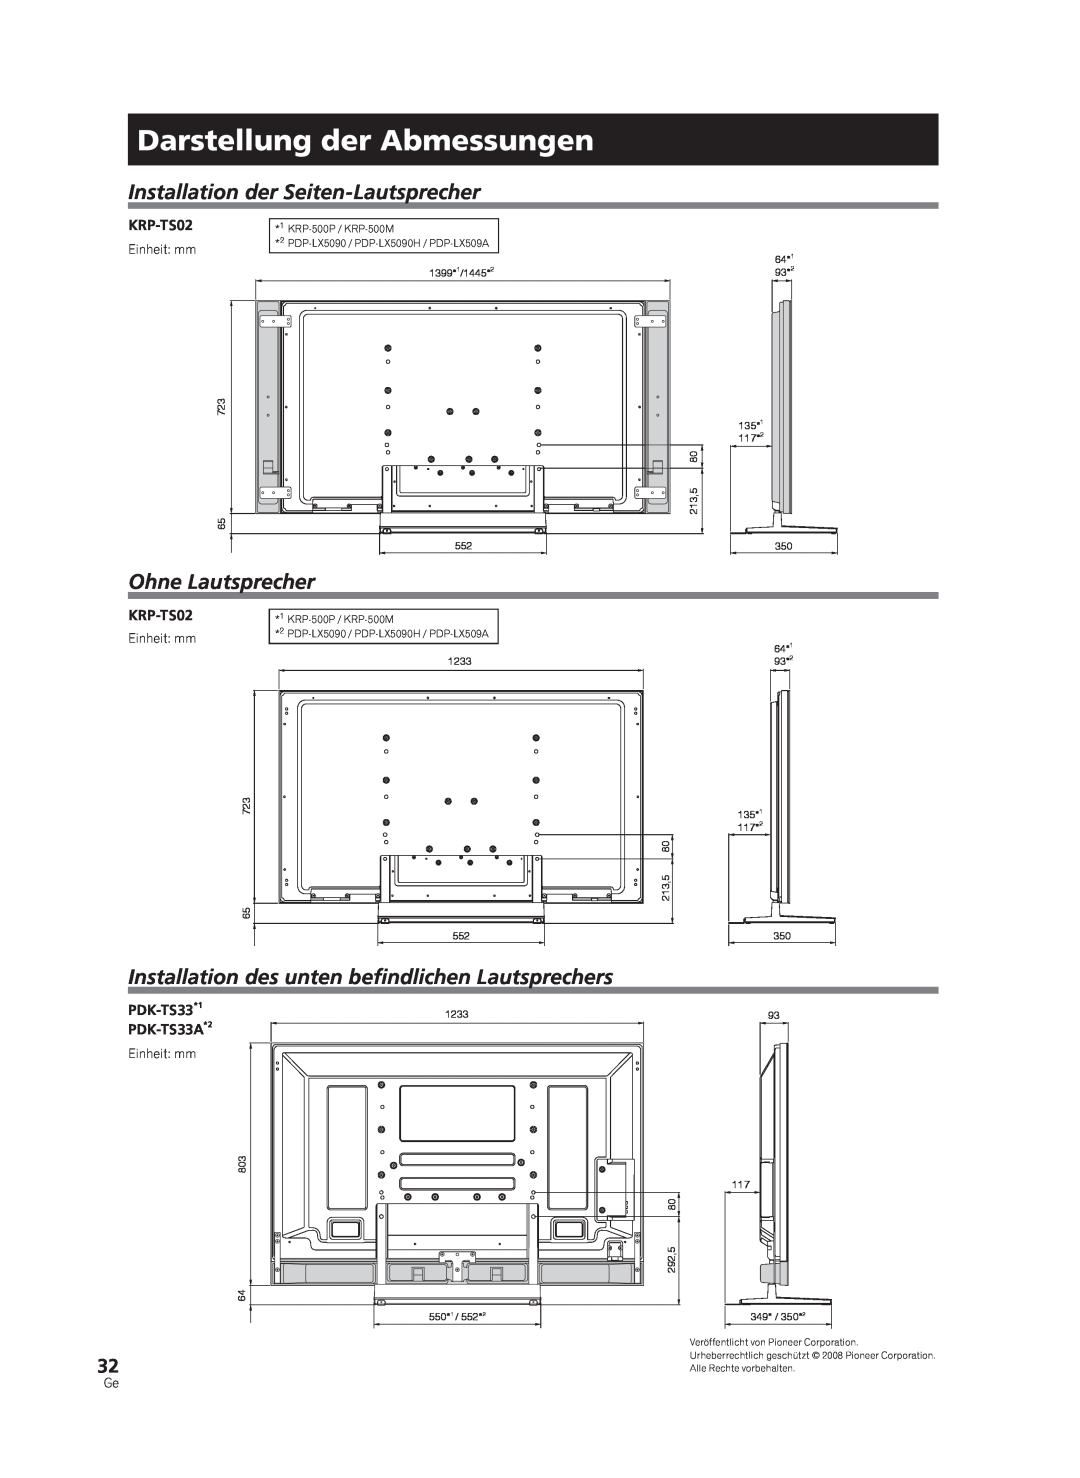 Pioneer KRP-TS02 Darstellung der Abmessungen, Installation der Seiten-Lautsprecher, Ohne Lautsprecher, Einheit: mm, 723 65 